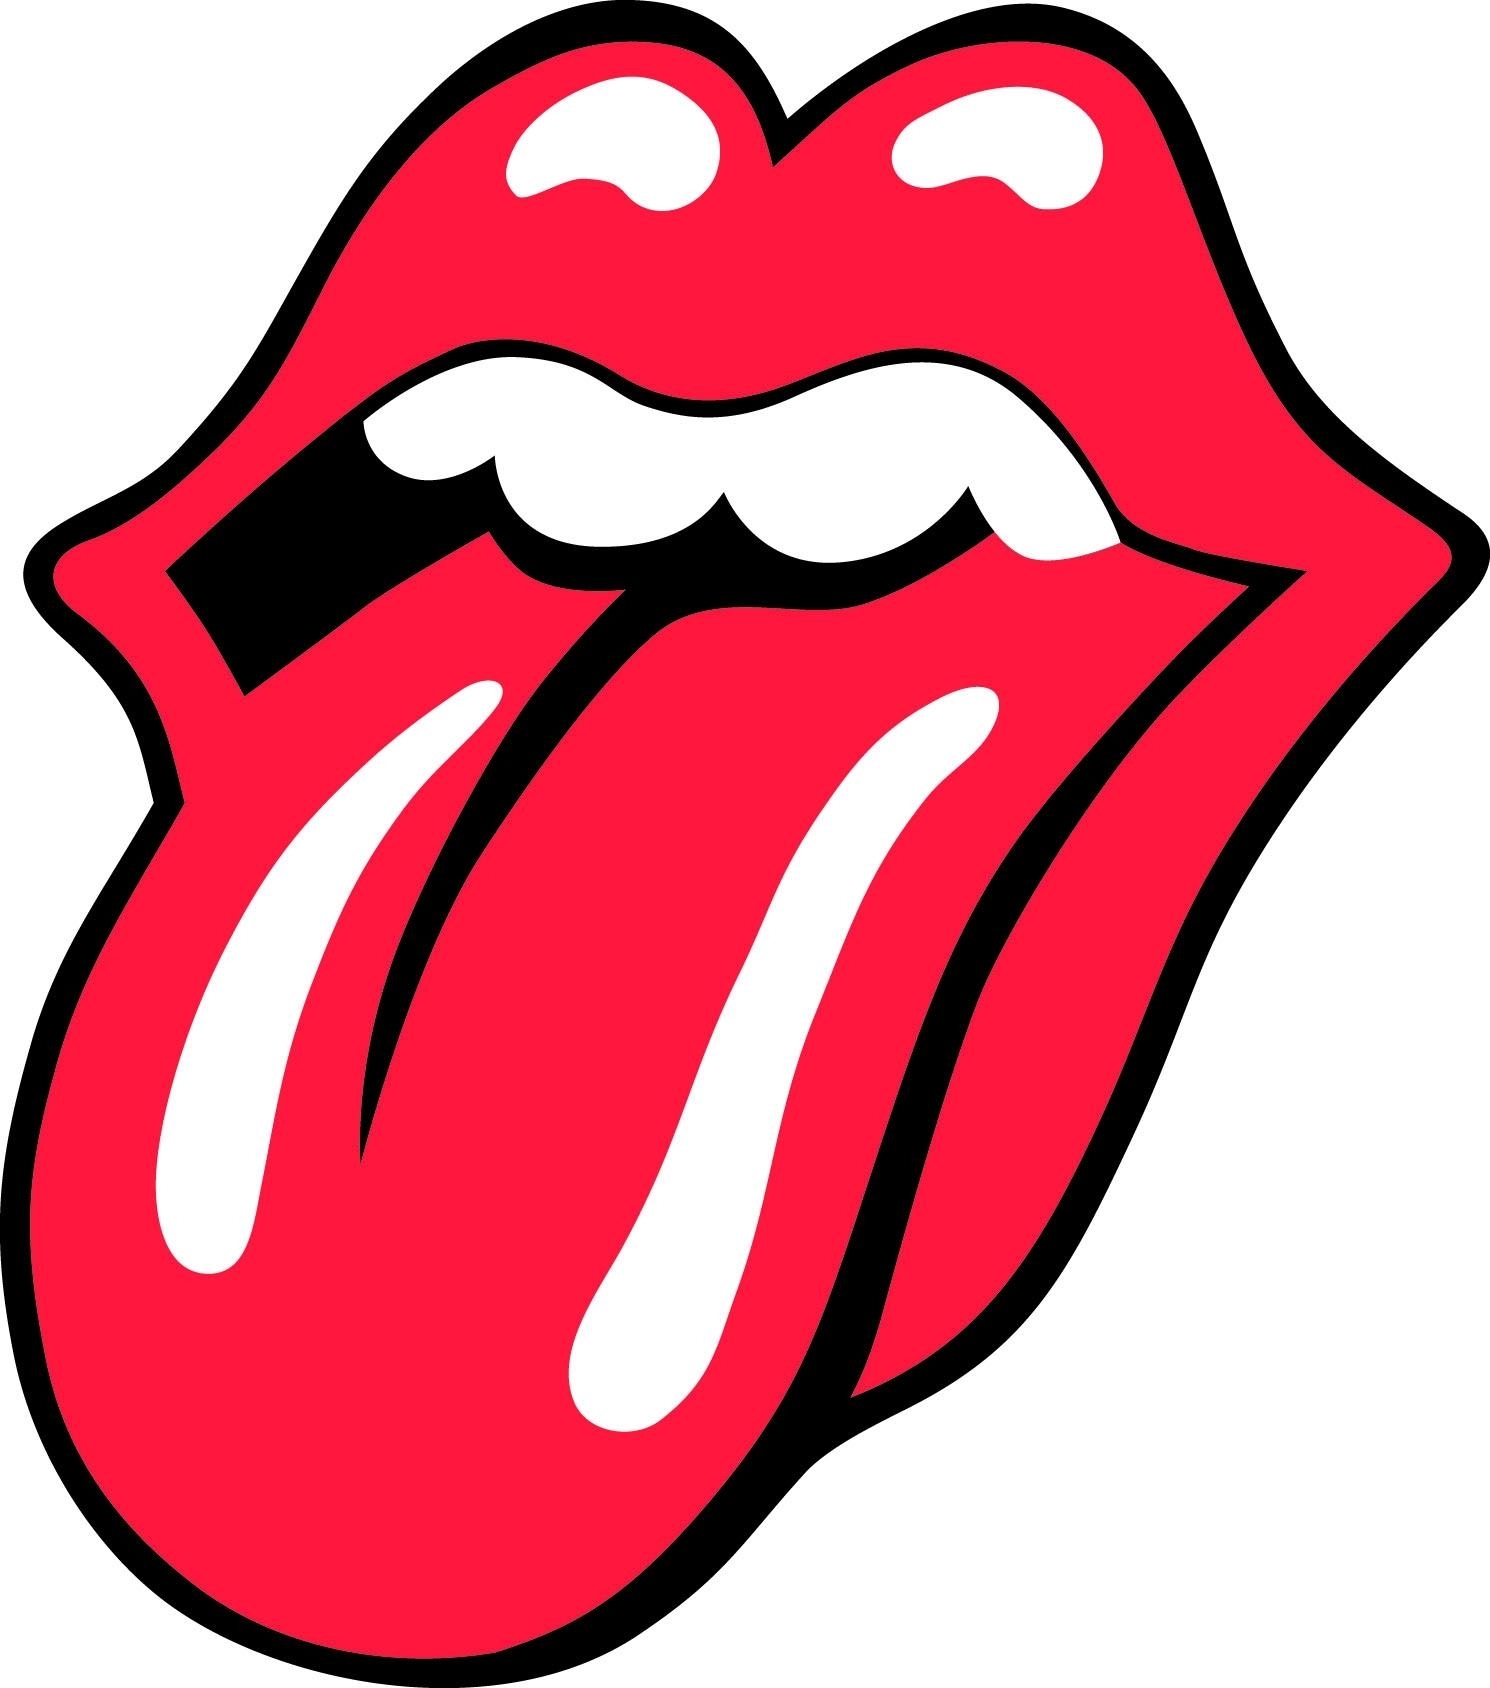 Soorten merken - logo beeldmerk -20120111 EU logo Rolling Stones 010553329